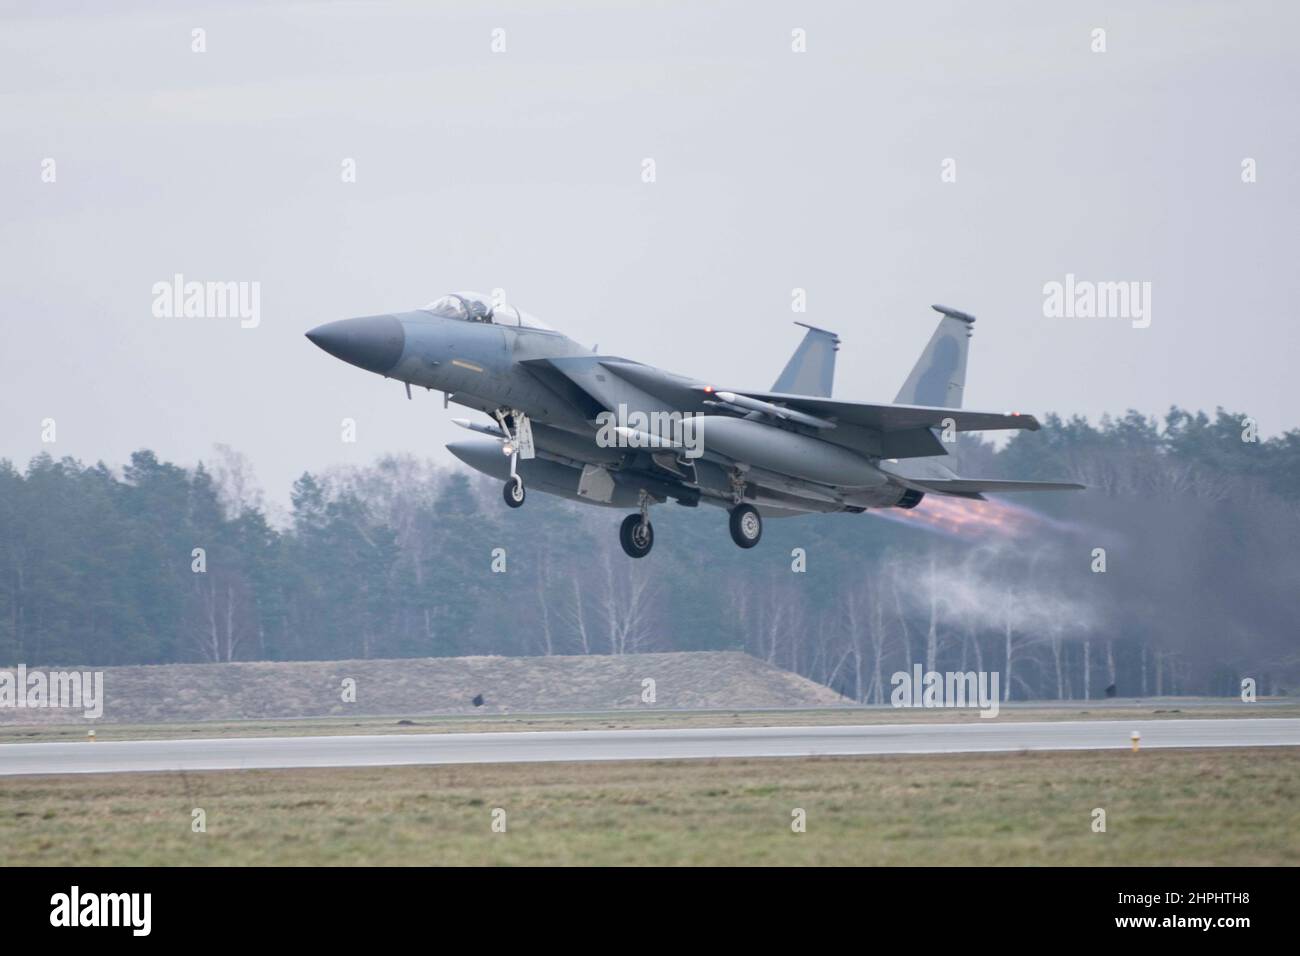 Un aigle F-15C de la Force aérienne des États-Unis affecté à l'escadron de chasse 493rd, la Royal Air Force (RAF) Lakenheath prend son envol à l'appui de missions de police aérienne renforcée de l'Organisation du Traité de l'Atlantique Nord (OTAN) avec la Force aérienne polonaise à la base aérienne de Łask, en Pologne, le 15 février 2022. Les exercices de défense aérienne produisent une préparation combinée et une capacité cohérente pour les actifs maritimes et aériens alliés, essentielle pour la capacité robuste de l’OTAN à adapter et à faire évoluer sa position défensive et dissuasive, selon les besoins pour relever des défis stratégiques émergents et en évolution. (É.-U. Photo de la Force aérienne par Tech. Sgt. Jacob Albers) Banque D'Images